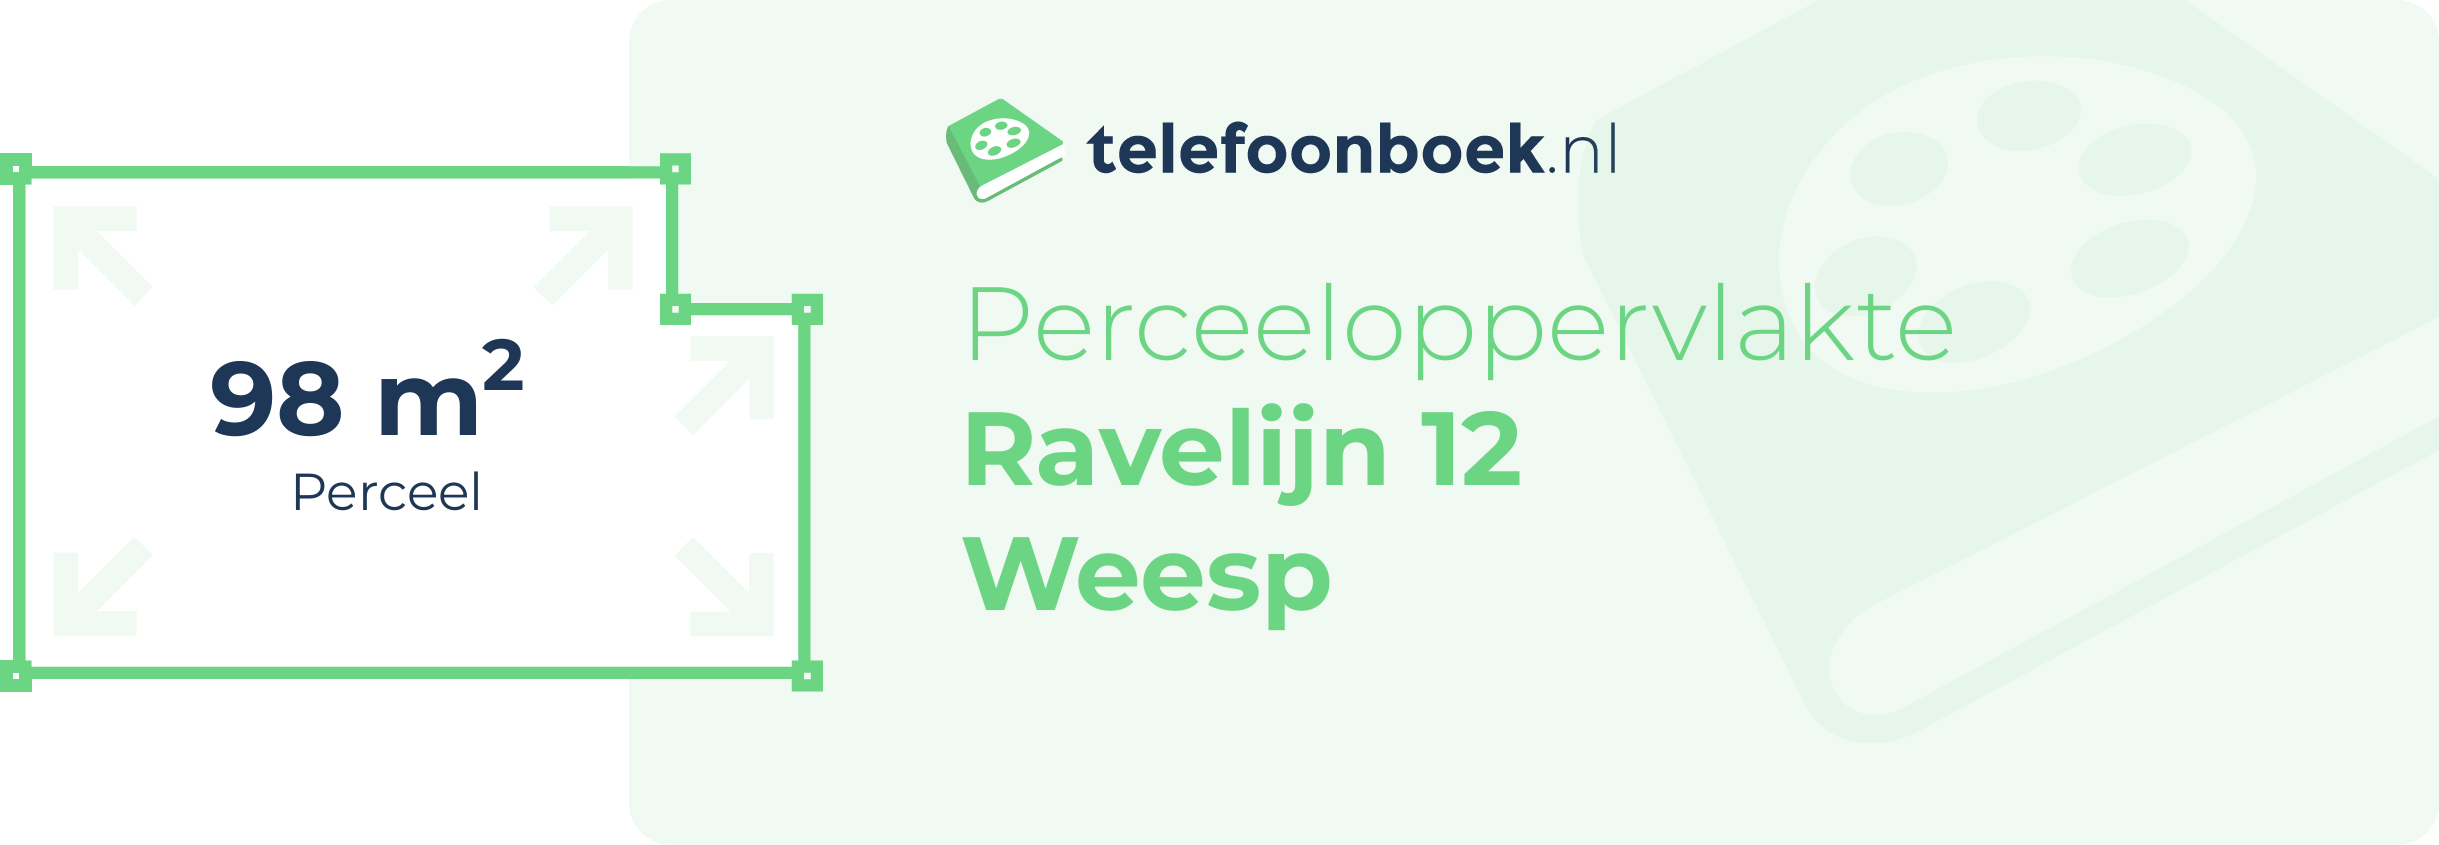 Perceeloppervlakte Ravelijn 12 Weesp